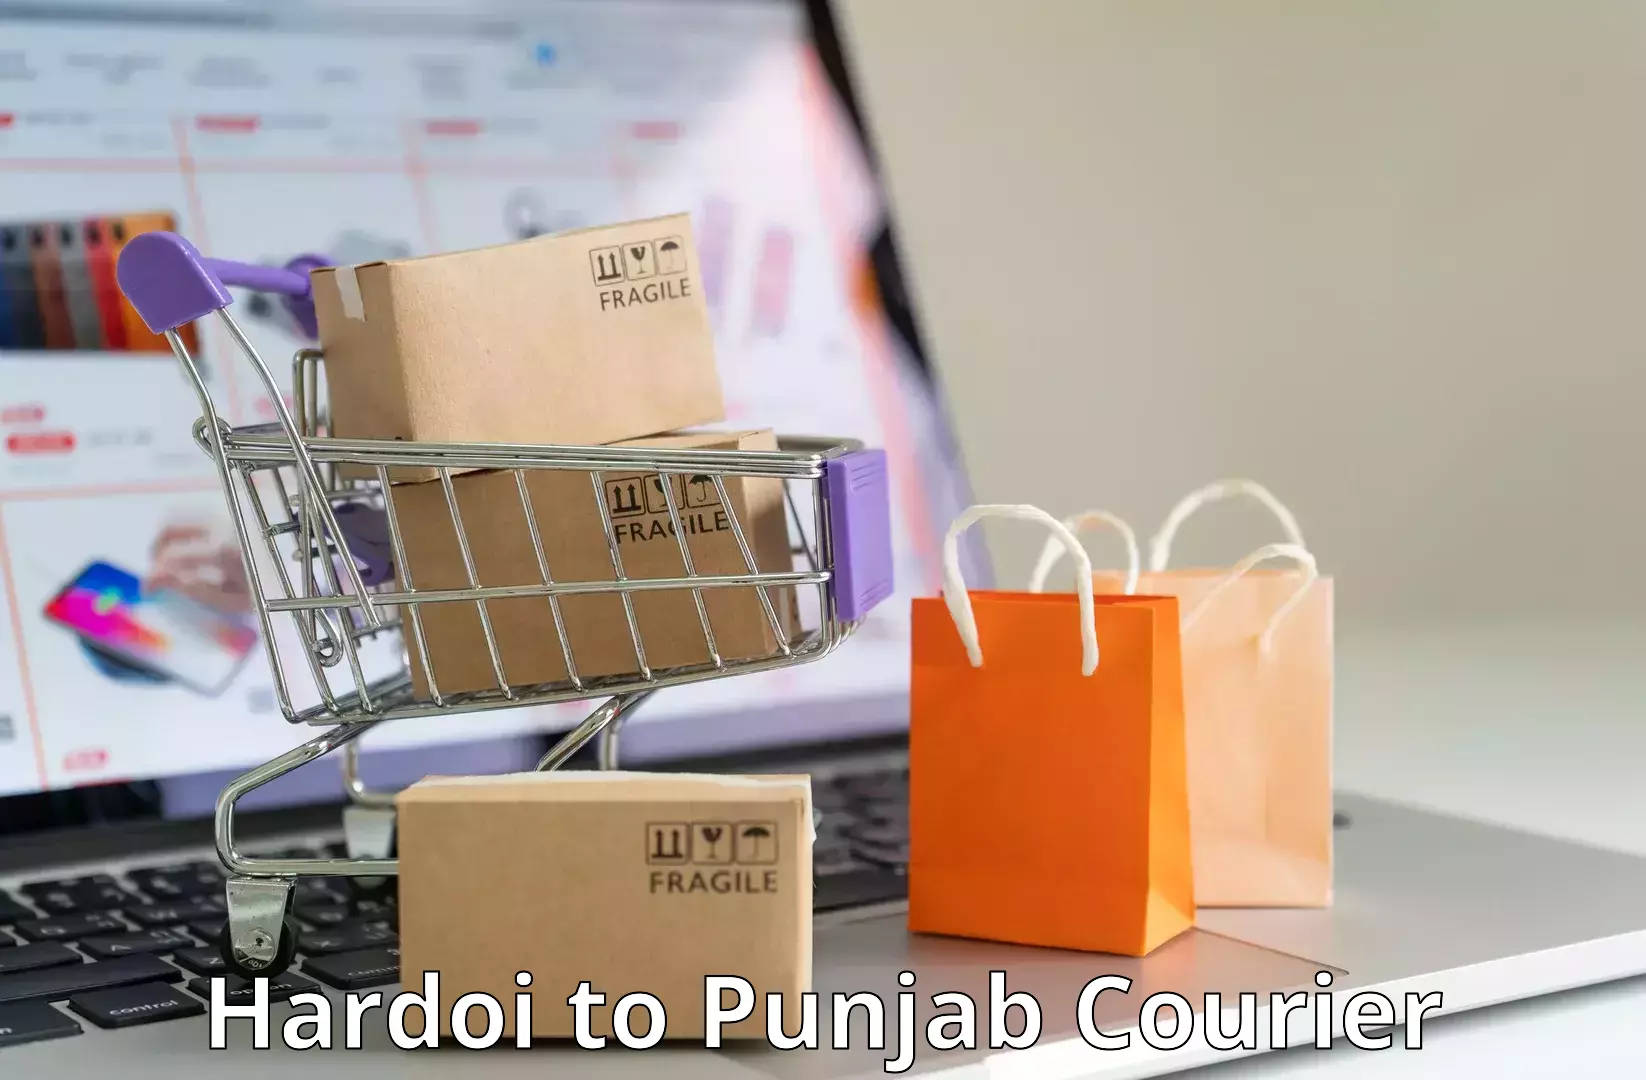 Bulk shipment Hardoi to Amritsar